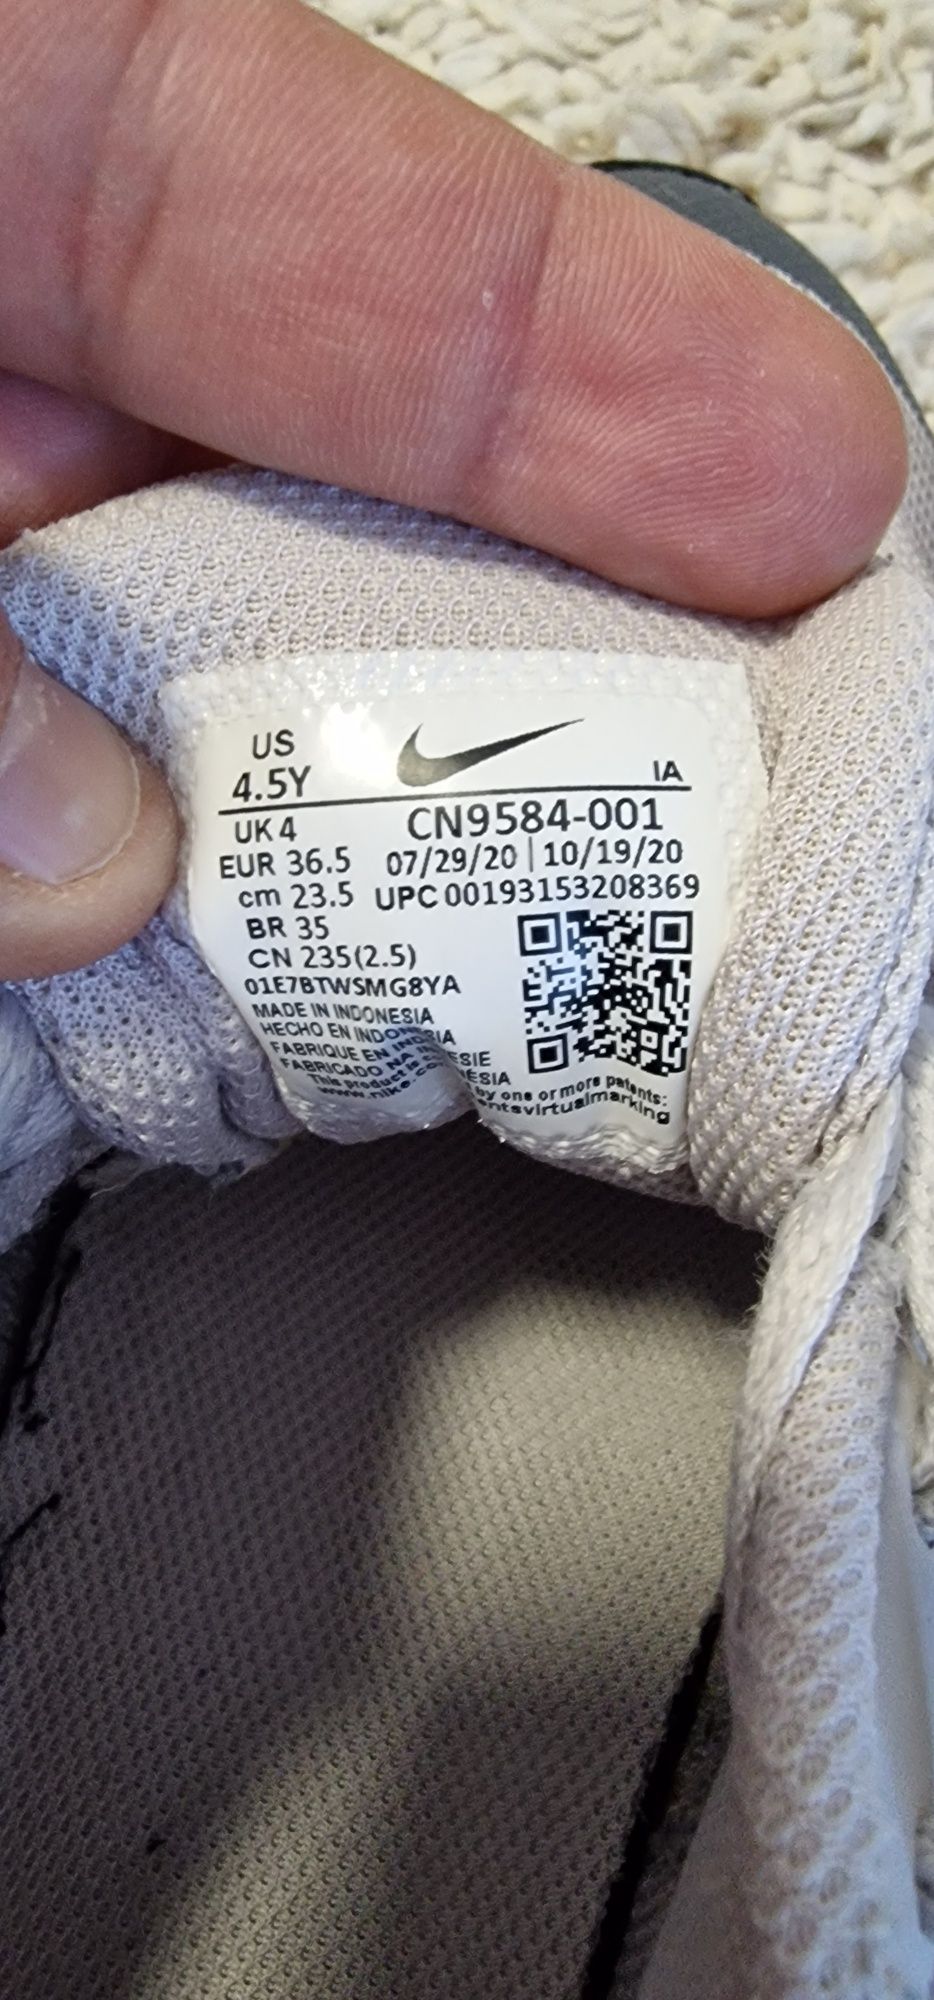 Adidasi Nike originali